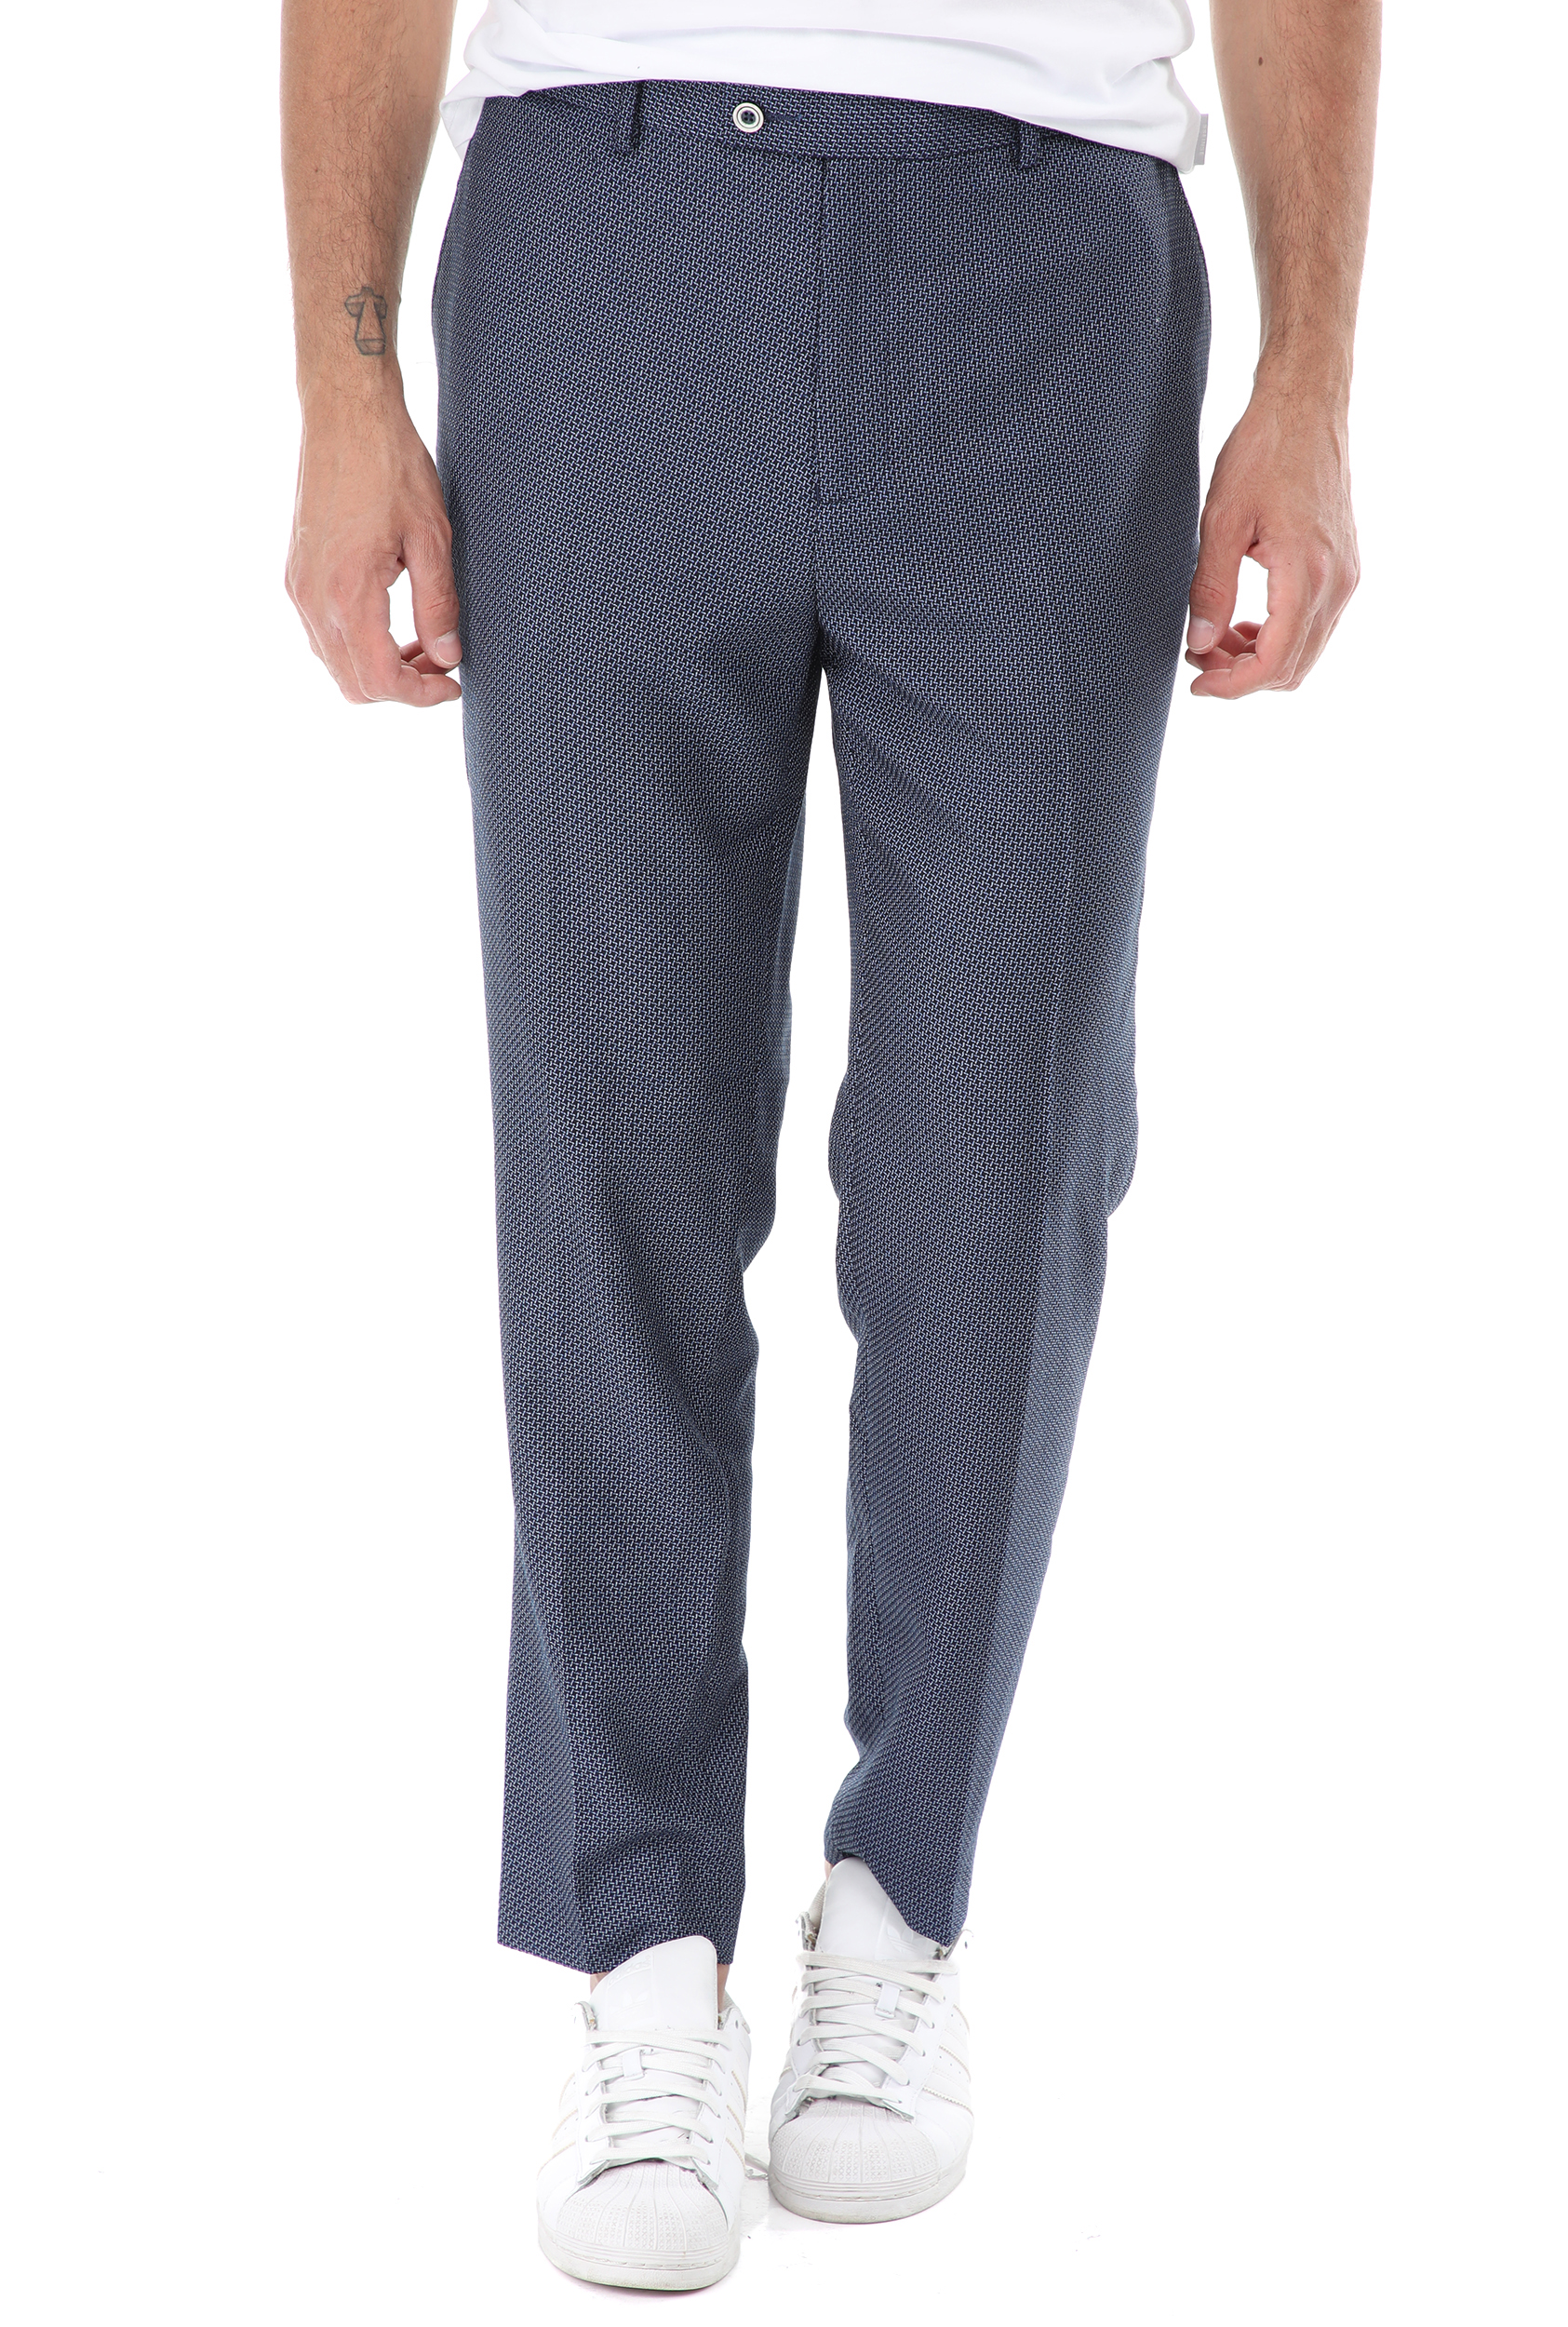 Ανδρικά/Ρούχα/Παντελόνια/Chinos SSEINSE - Ανδρικό παντελόνι chino SSEINSE tk america μπλε